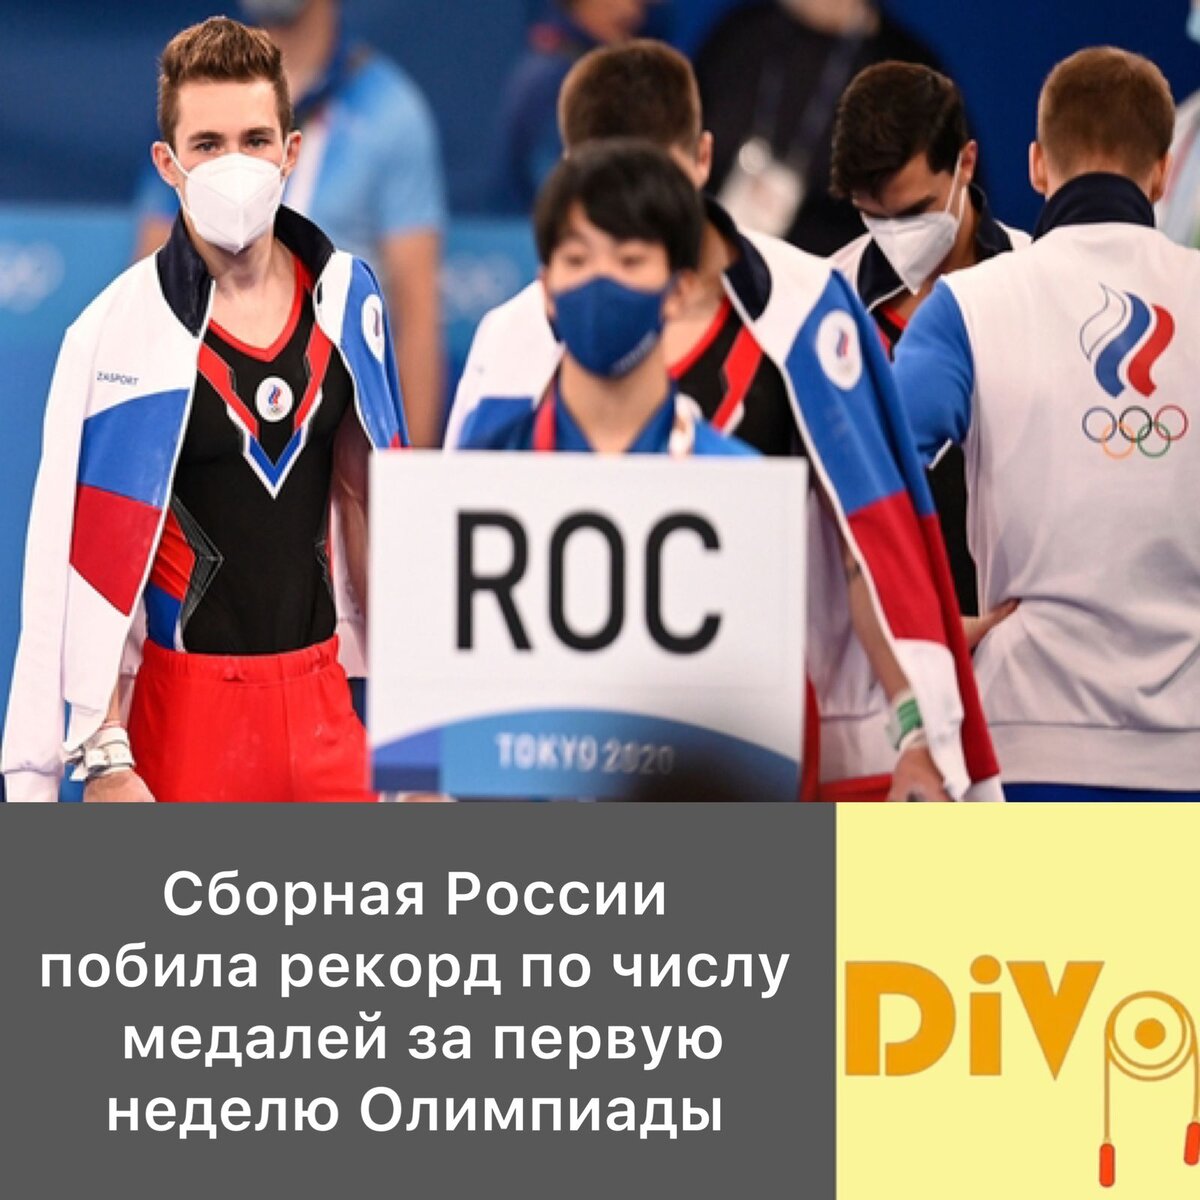 Лучший результат сборной. Российские спортсмены на Олимпиаде 2022 Пекин итоги по медалям. Сборная России побила свой рекорд по медалям на одной Олимпиаде. Медаль побил рекорд.